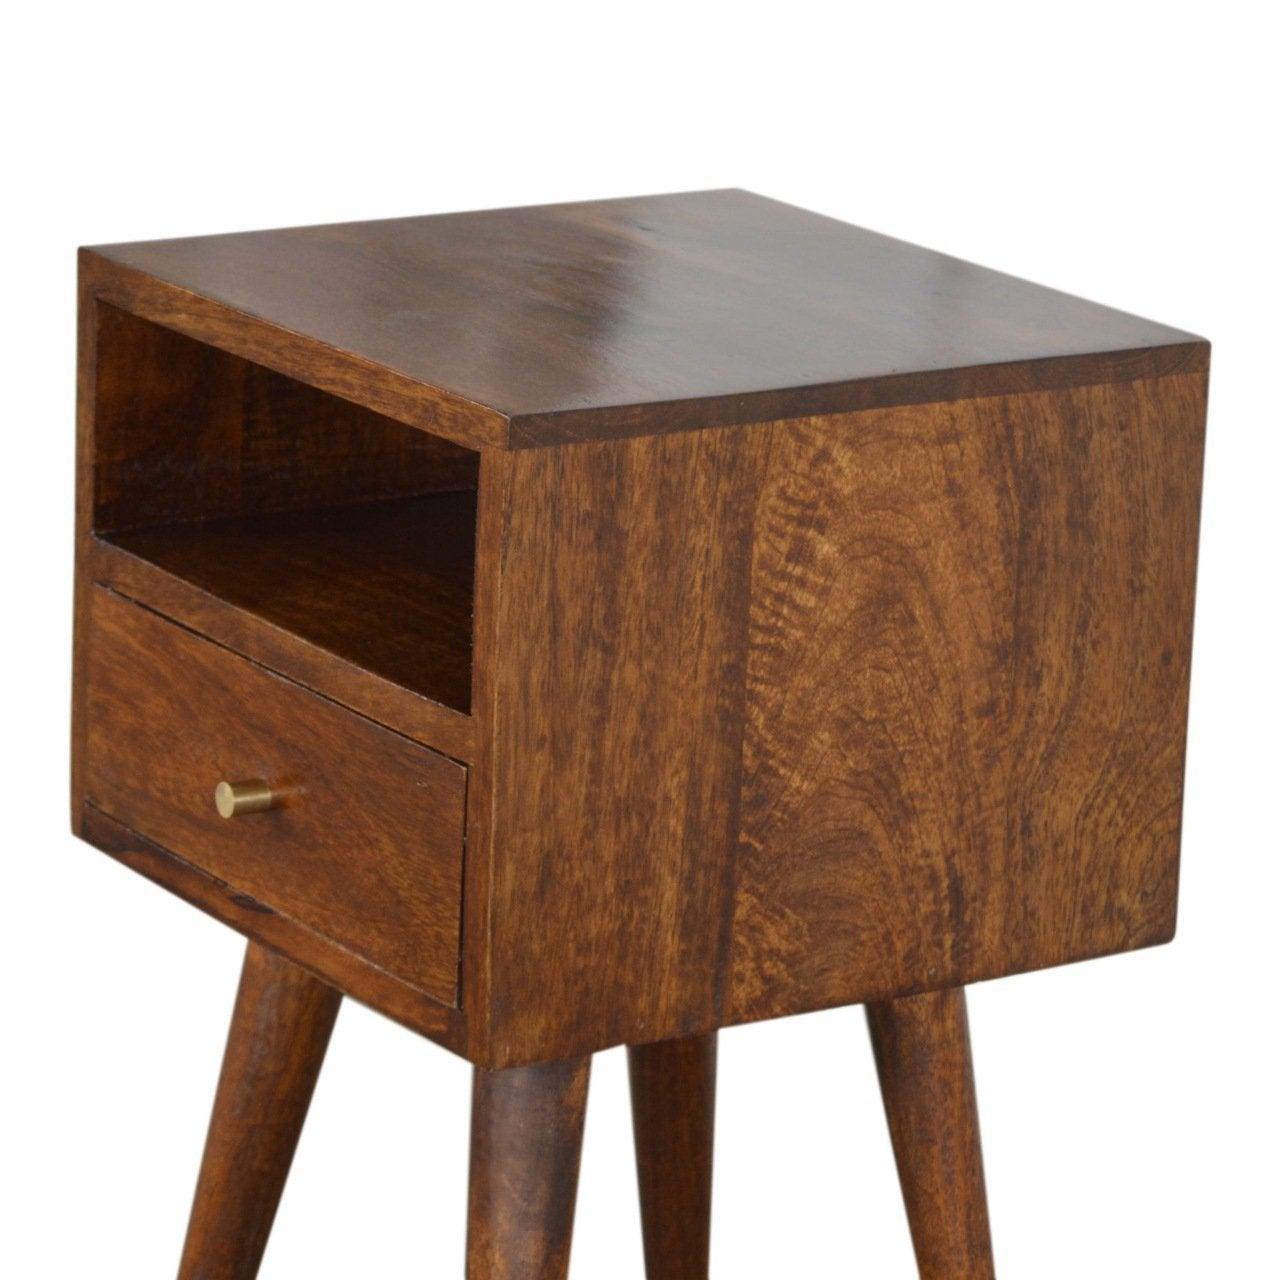 Petite chestnut finish bedside table - crimblefest furniture - image 5